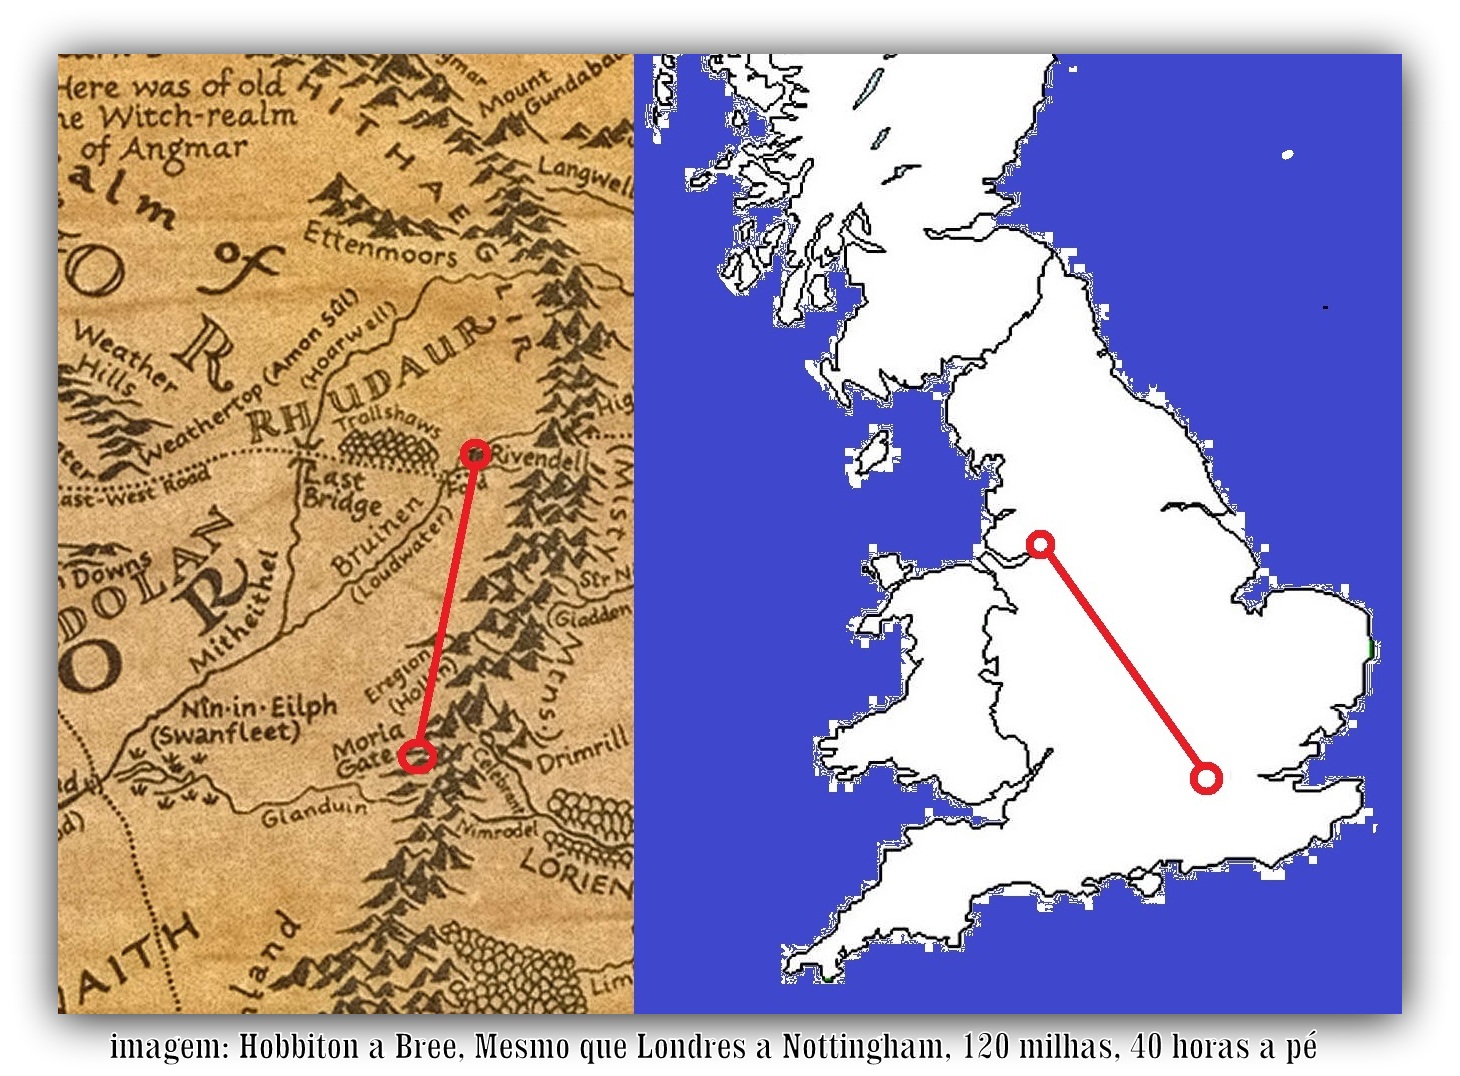 Пути средиземья. Путешествие Бильбо и Фродо на карте. Маршрут Фродо на картах Средиземья. Путь Фродо на карте Средиземья. Карта Средиземья Властелин колец путь Фродо.